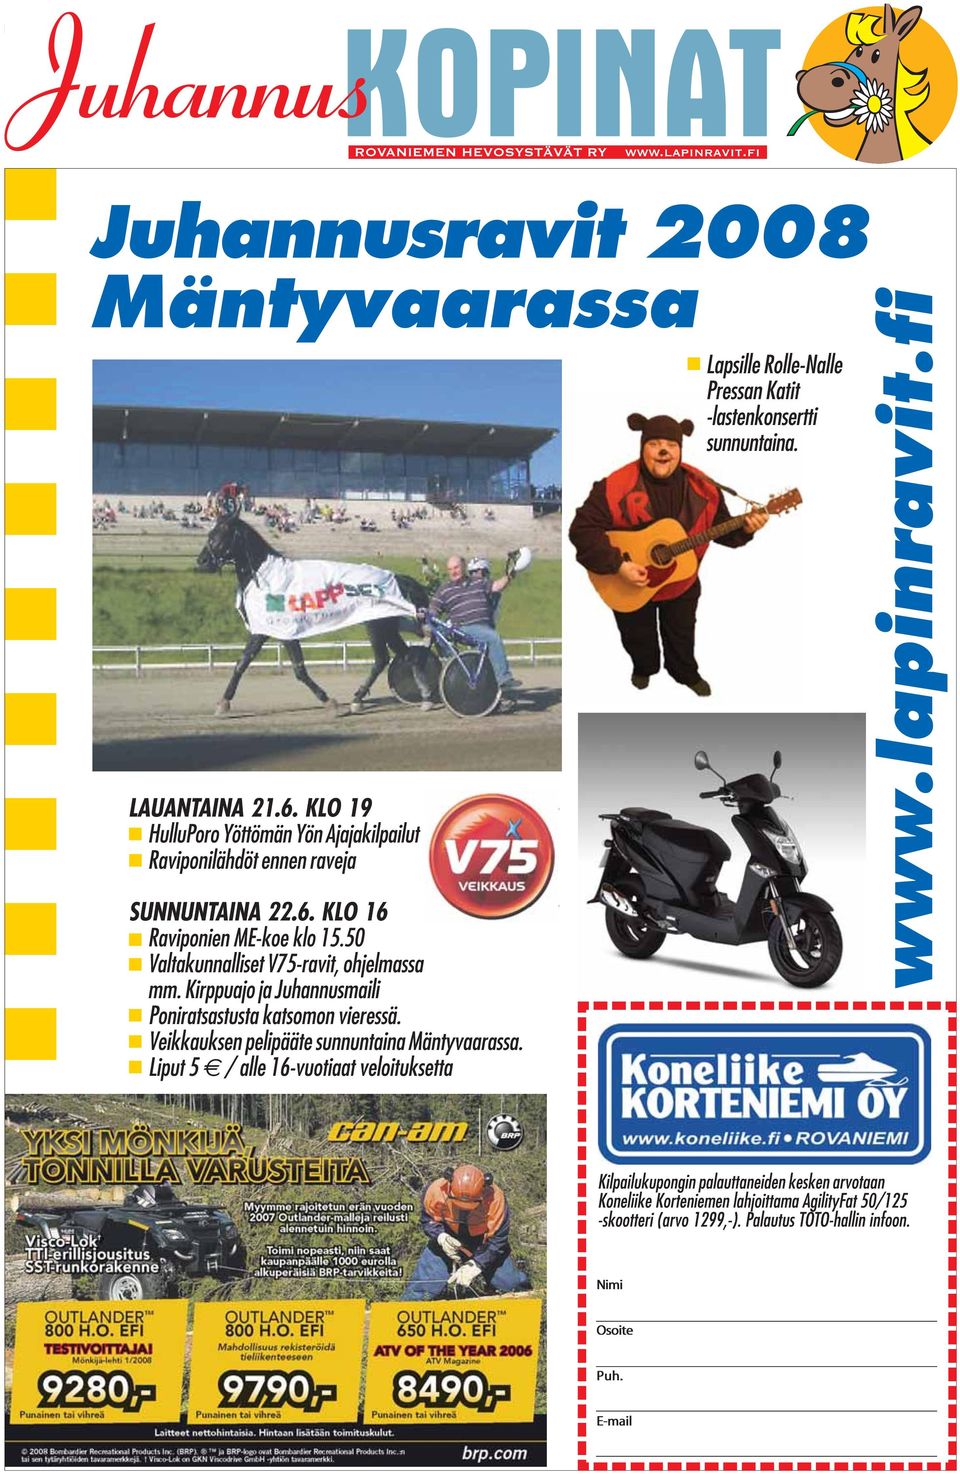 50 Valtakunnalliset V75-ravit, ohjelmassa mm. Kirppuajo ja Juhannusmaili Poniratsastusta katsomon vieressä.